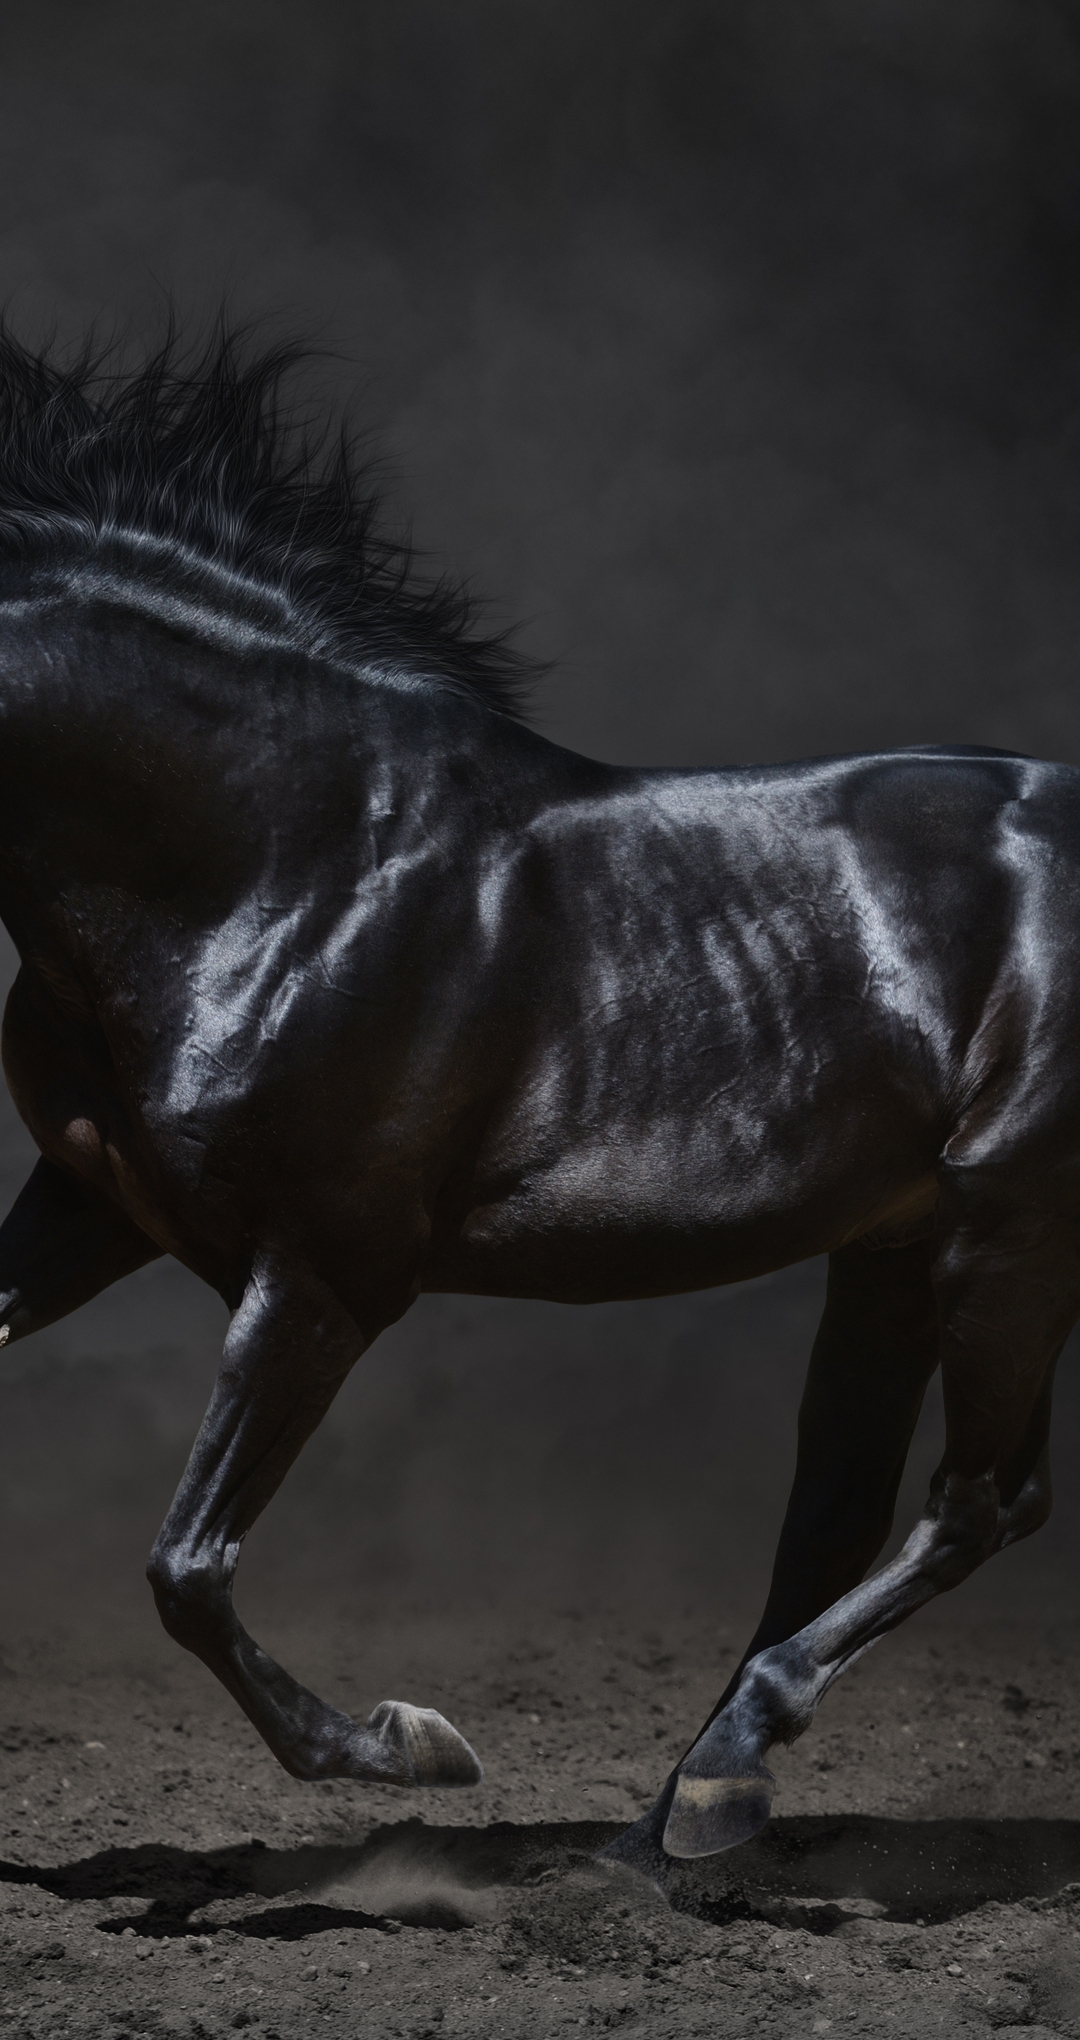 Картинка: Лошадь, чёрная, скачет, земля, красивая, пыль, дым